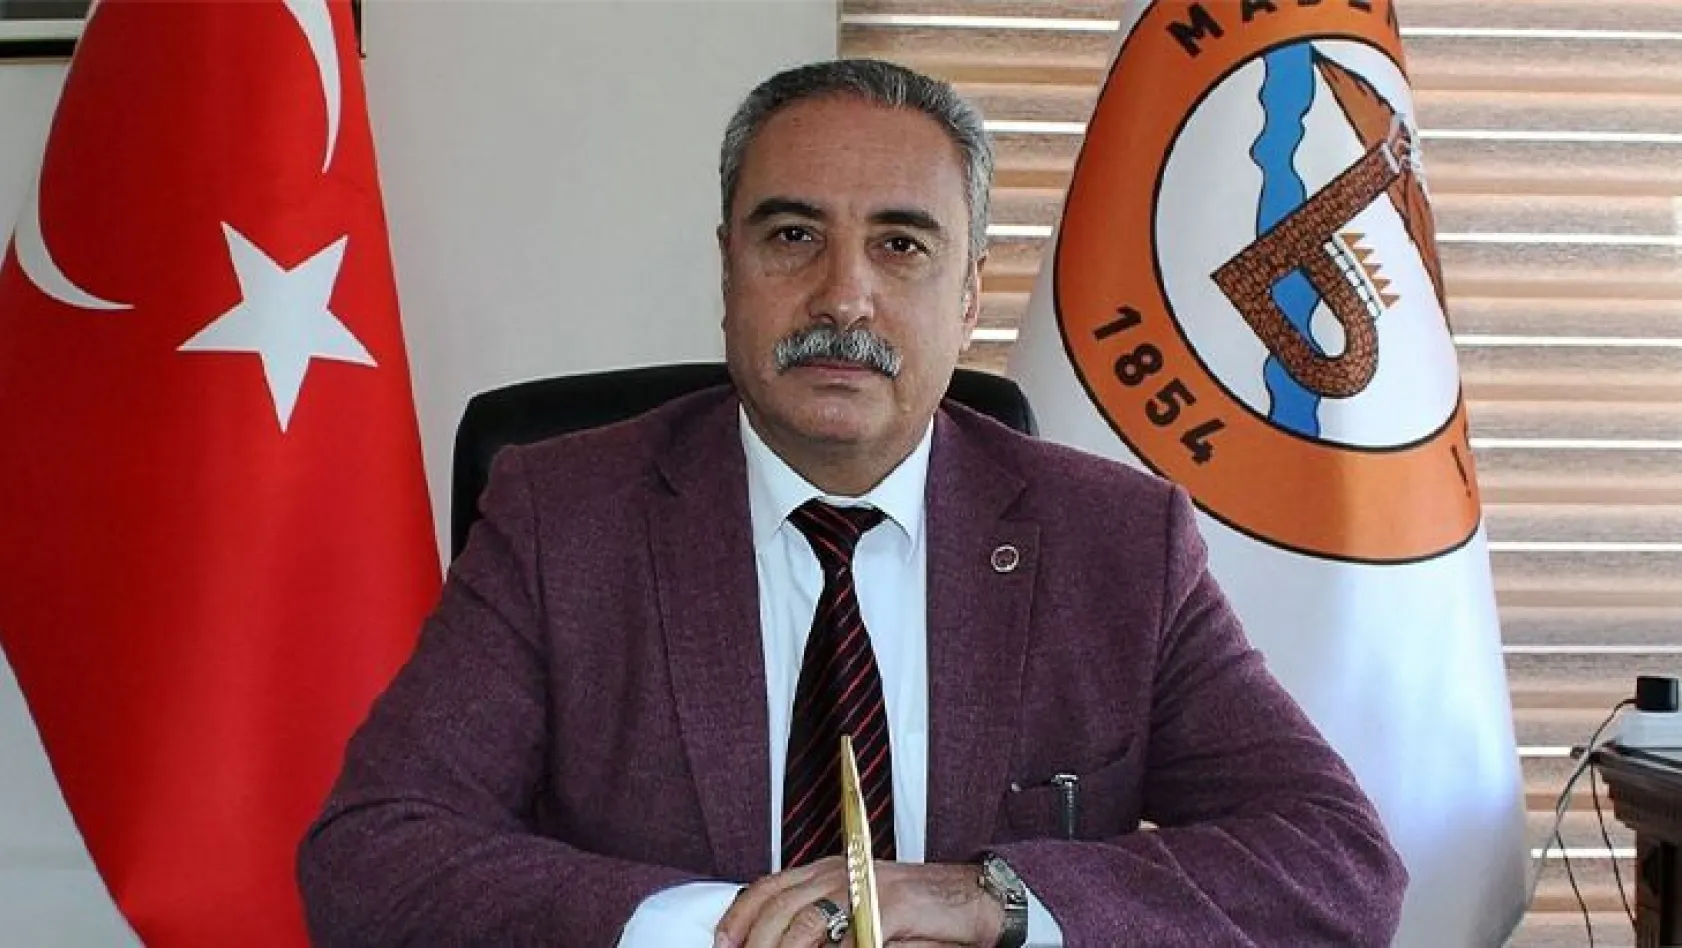 Maden Belediye Başkanından AK Parti İlçe Başkanına müfteri iddiası